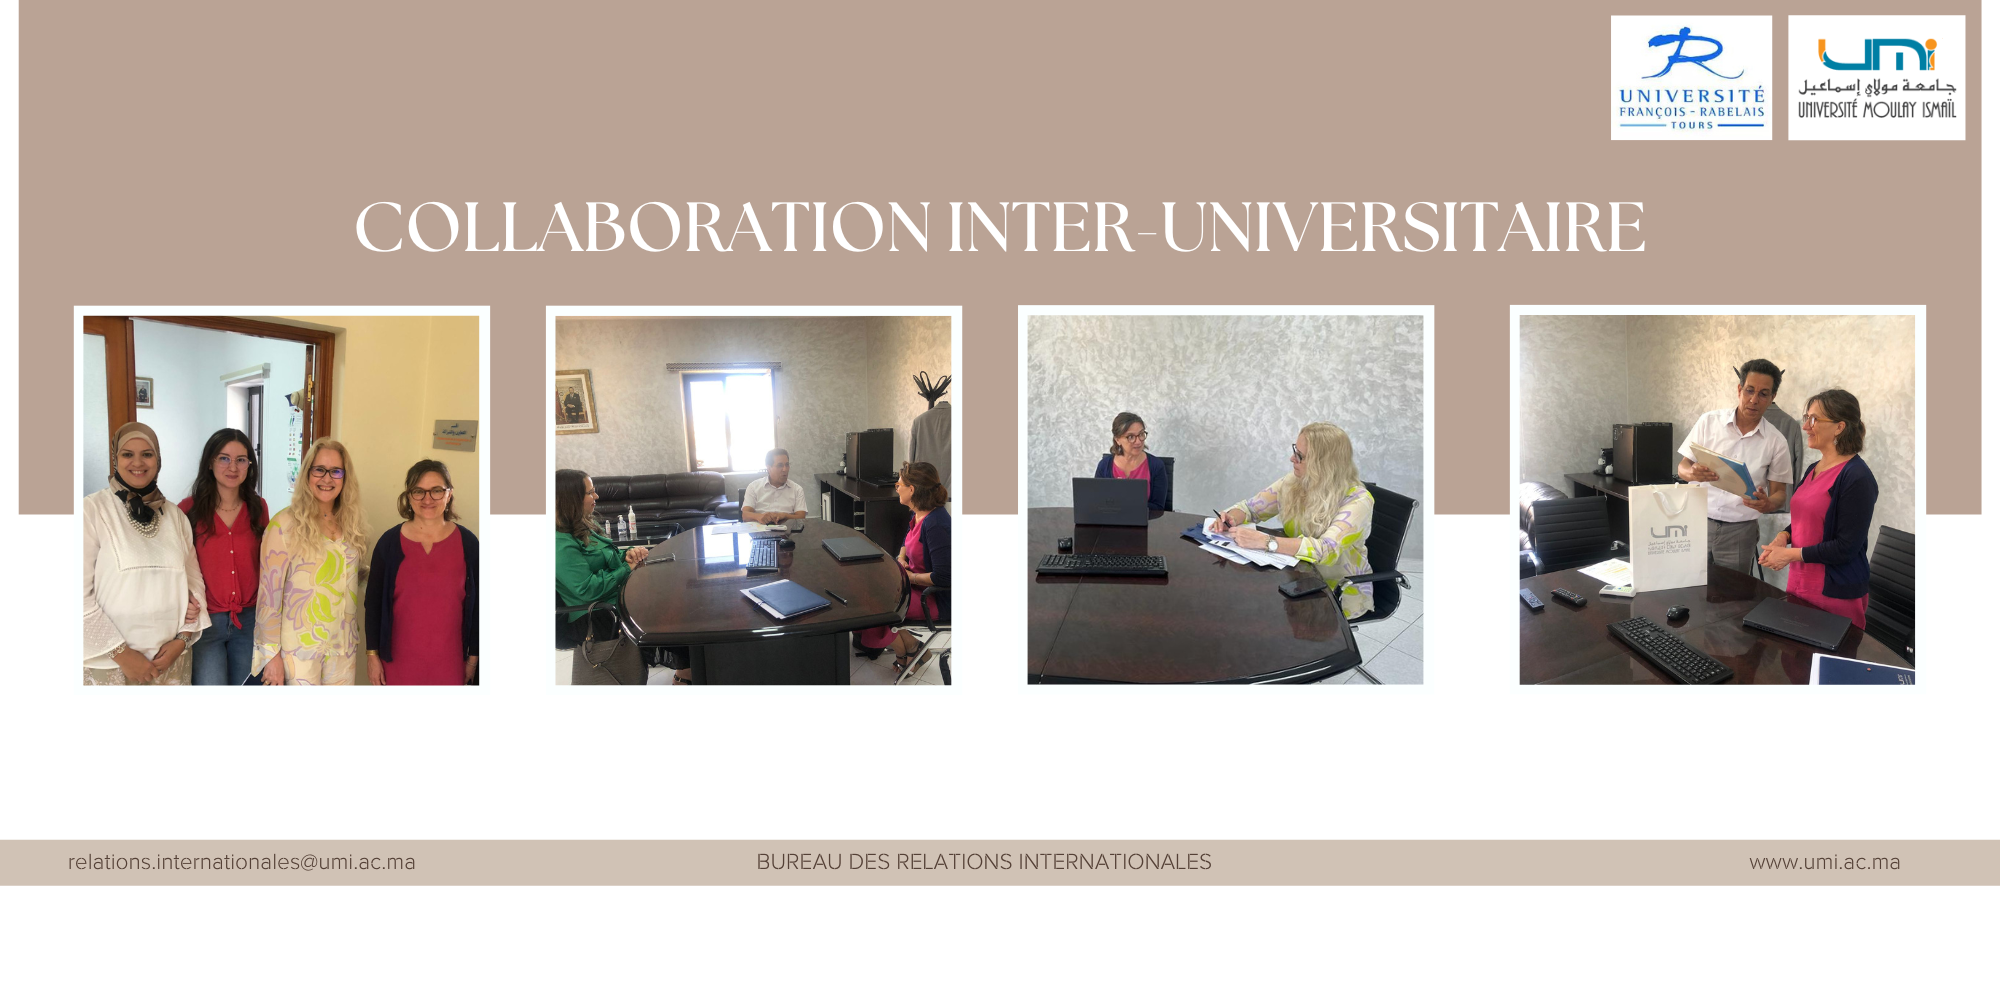 Renforcement de la Collaboration Interuniversitaire entre l’Université Moulay Ismail et l’Université François-Rabelais de Tours en France 